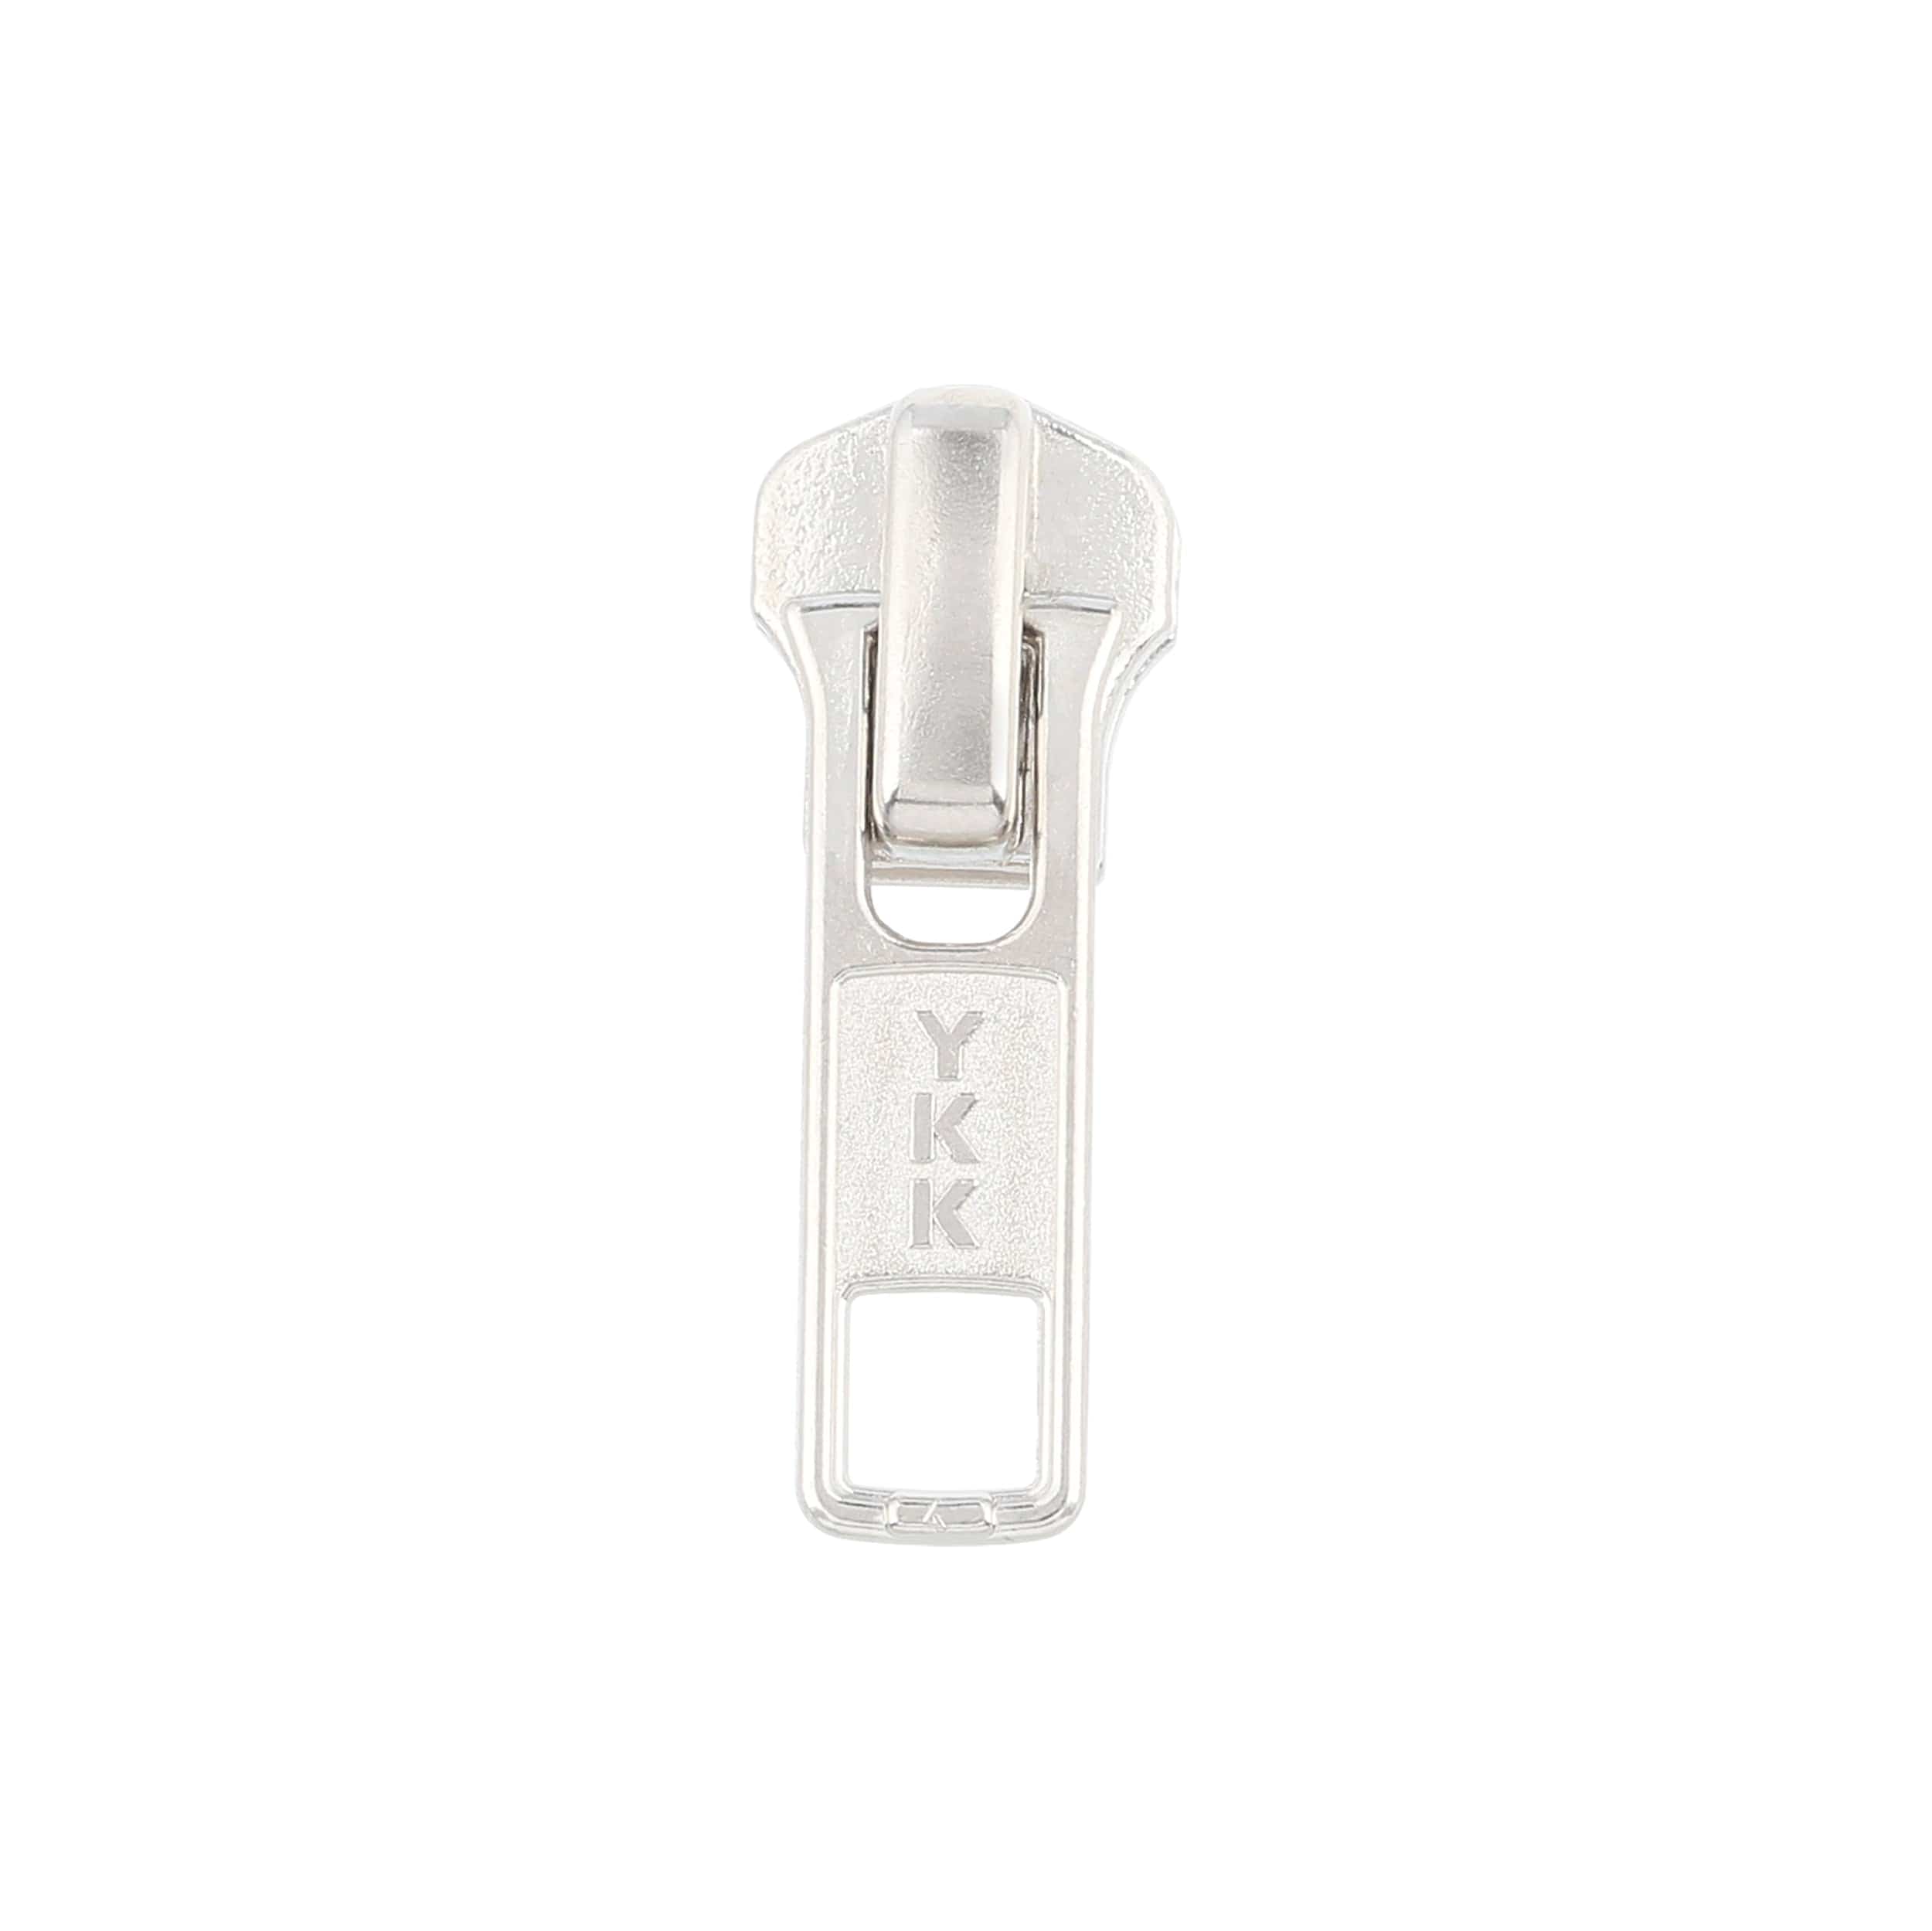 YKK Zipper Pulls, Water Resistant Zipper Sliders